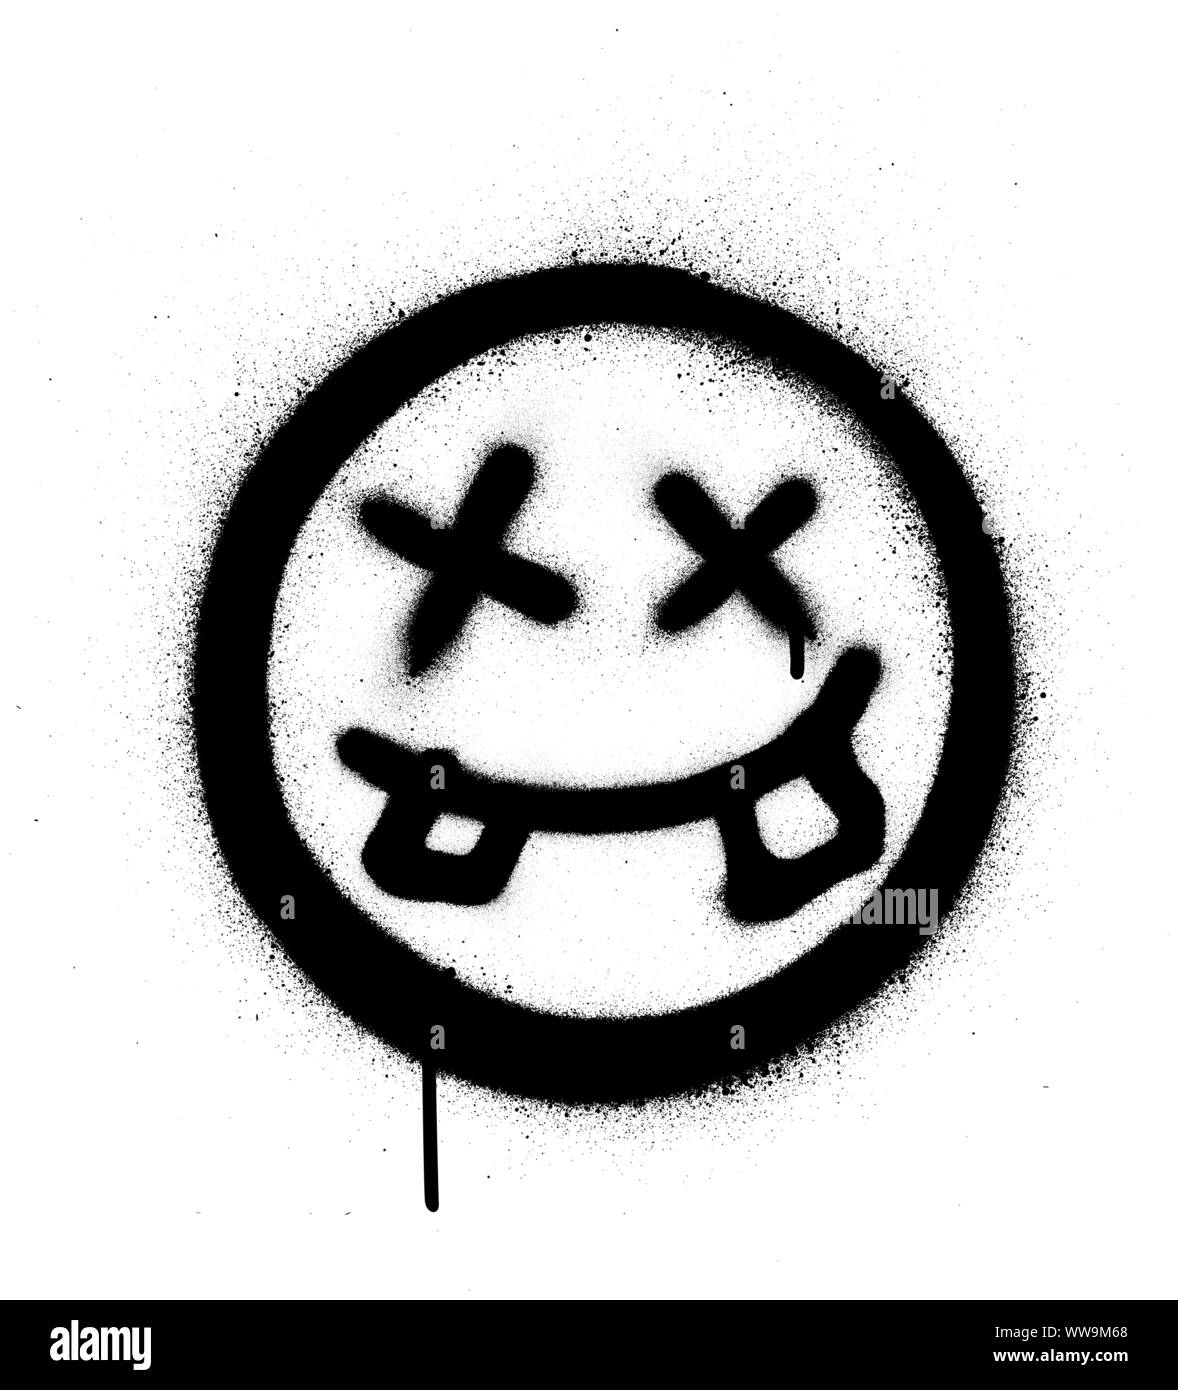 Graffiti crazy dude Symbol gesprüht in Schwarz auf Weiß Stock Vektor